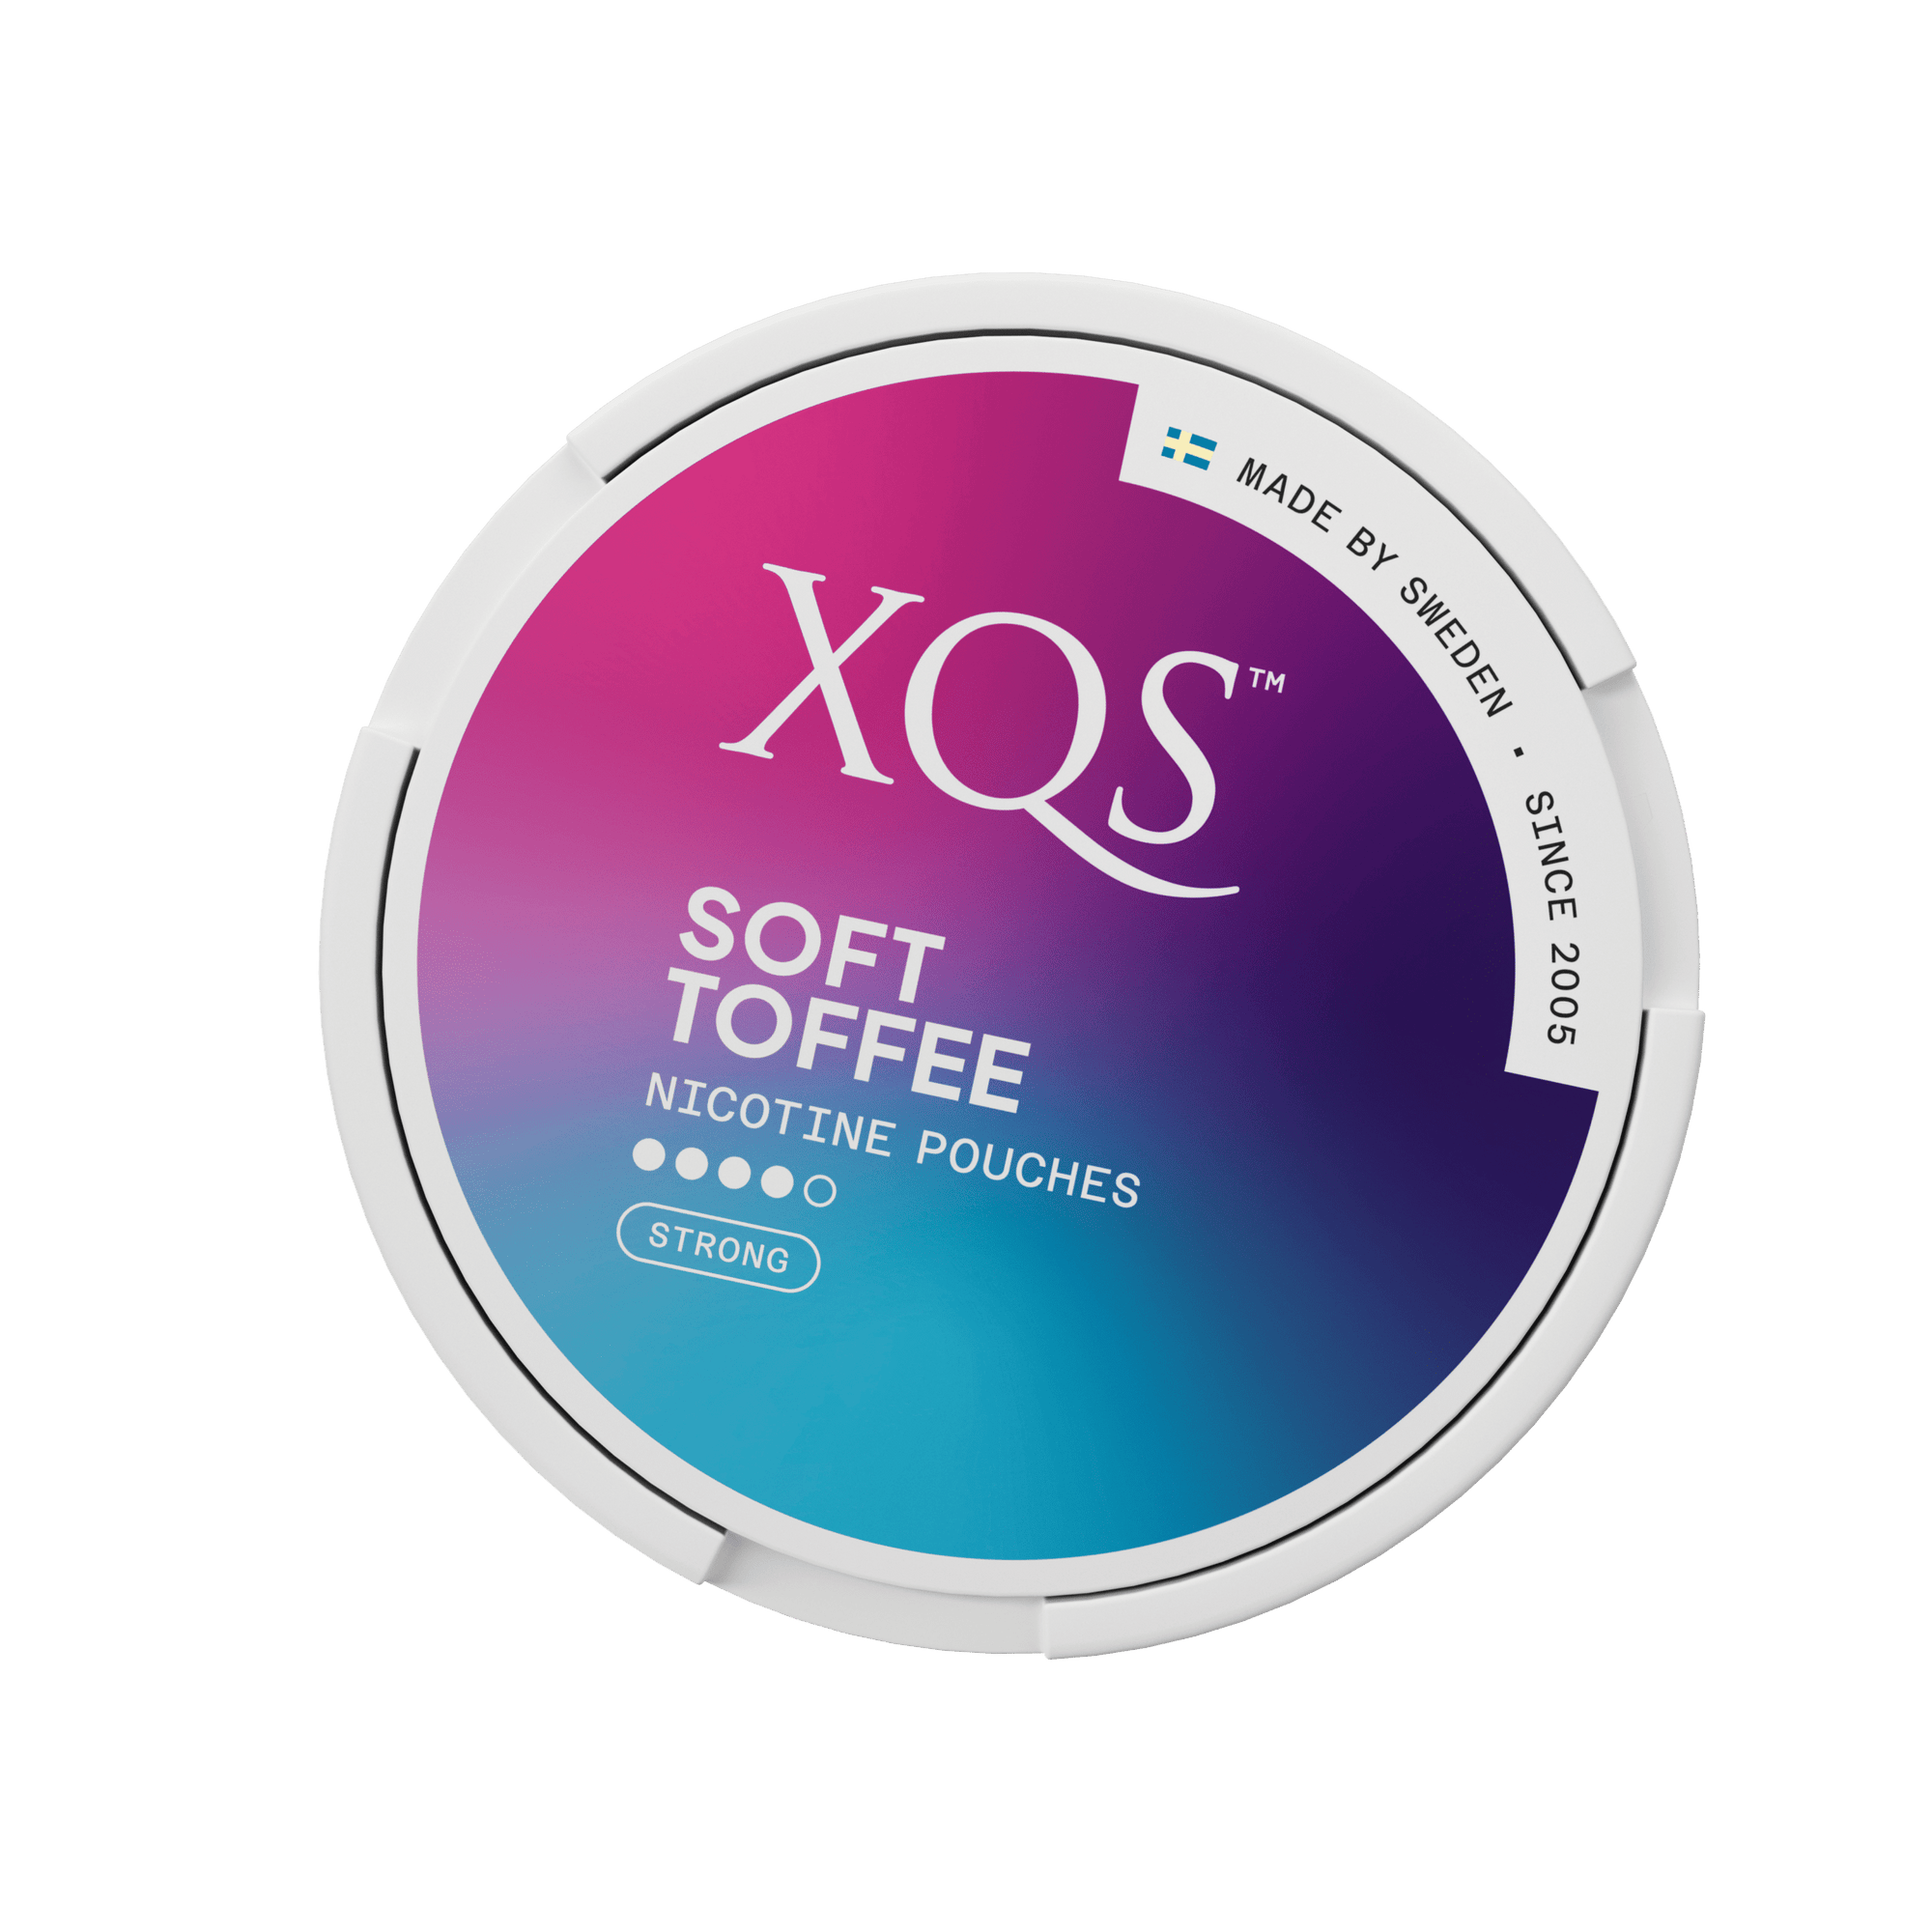 XQS Soft Toffee - Nammi.net